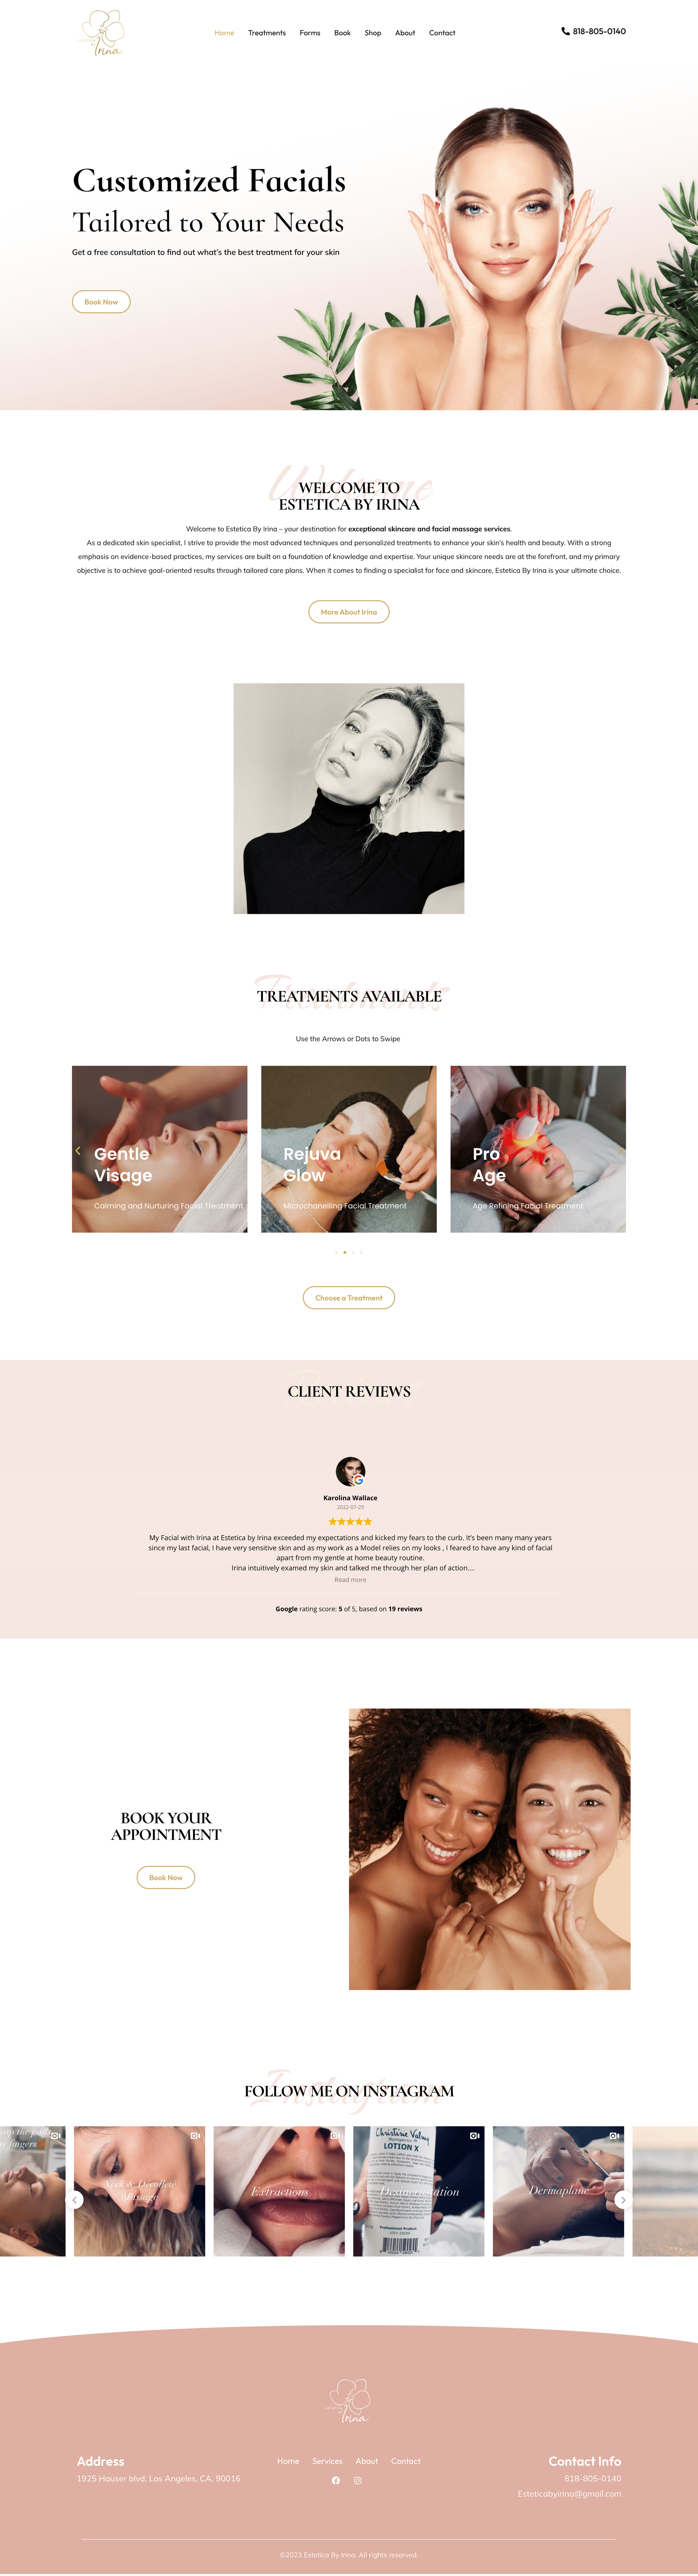 Esthetician Custom Website Design